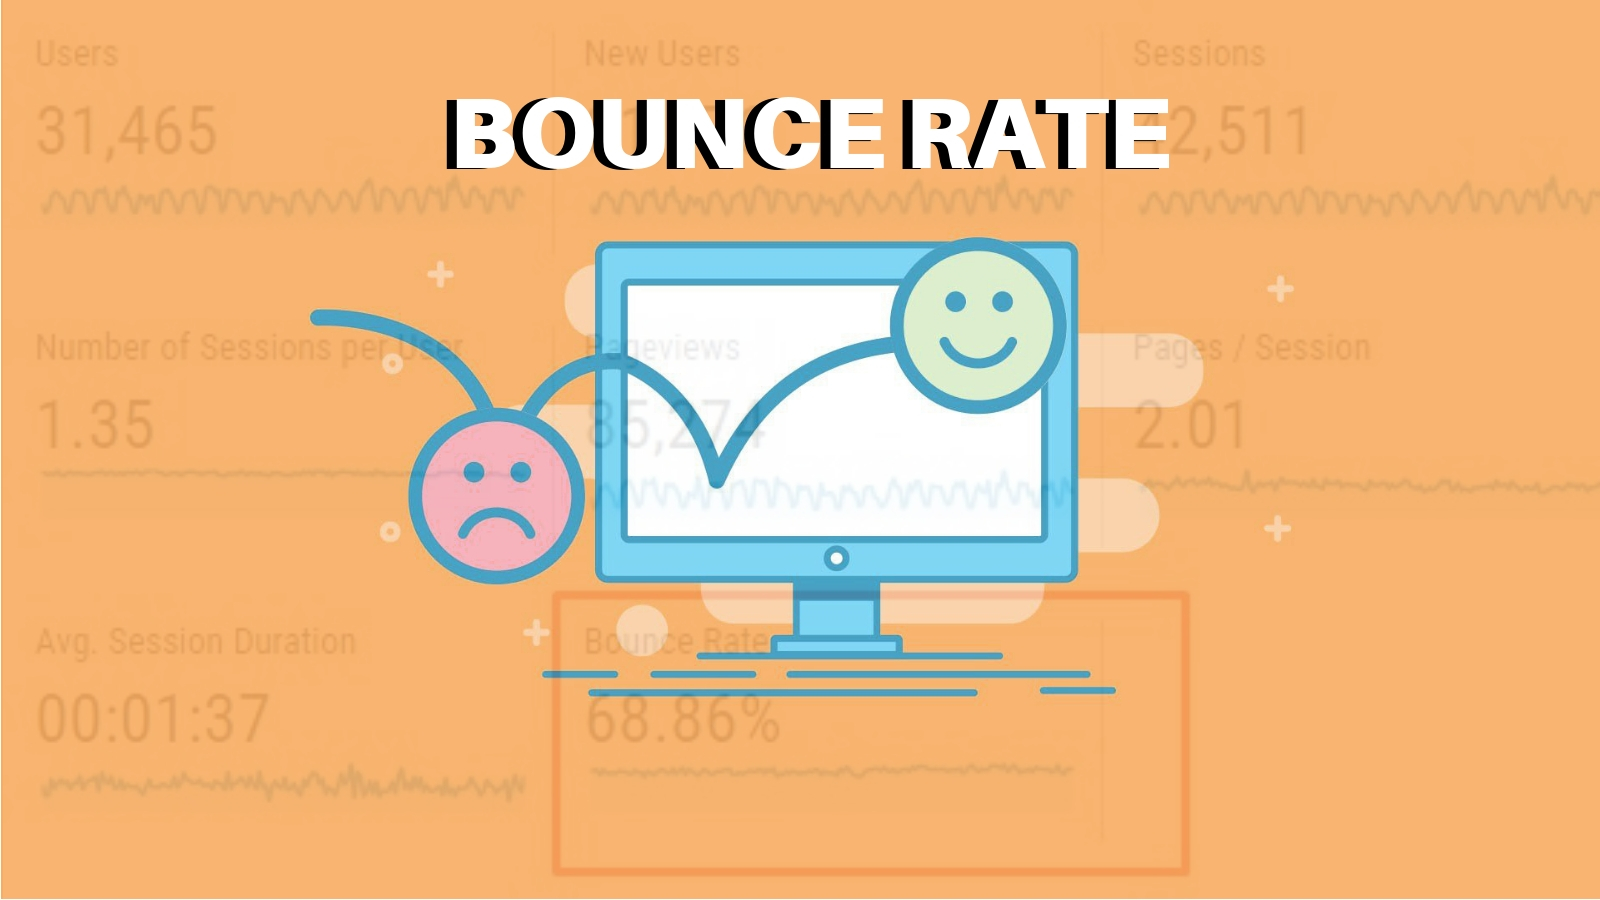 Bounce rate là gì? tại sao nó lại được nhiều người quan tâm như vậy?